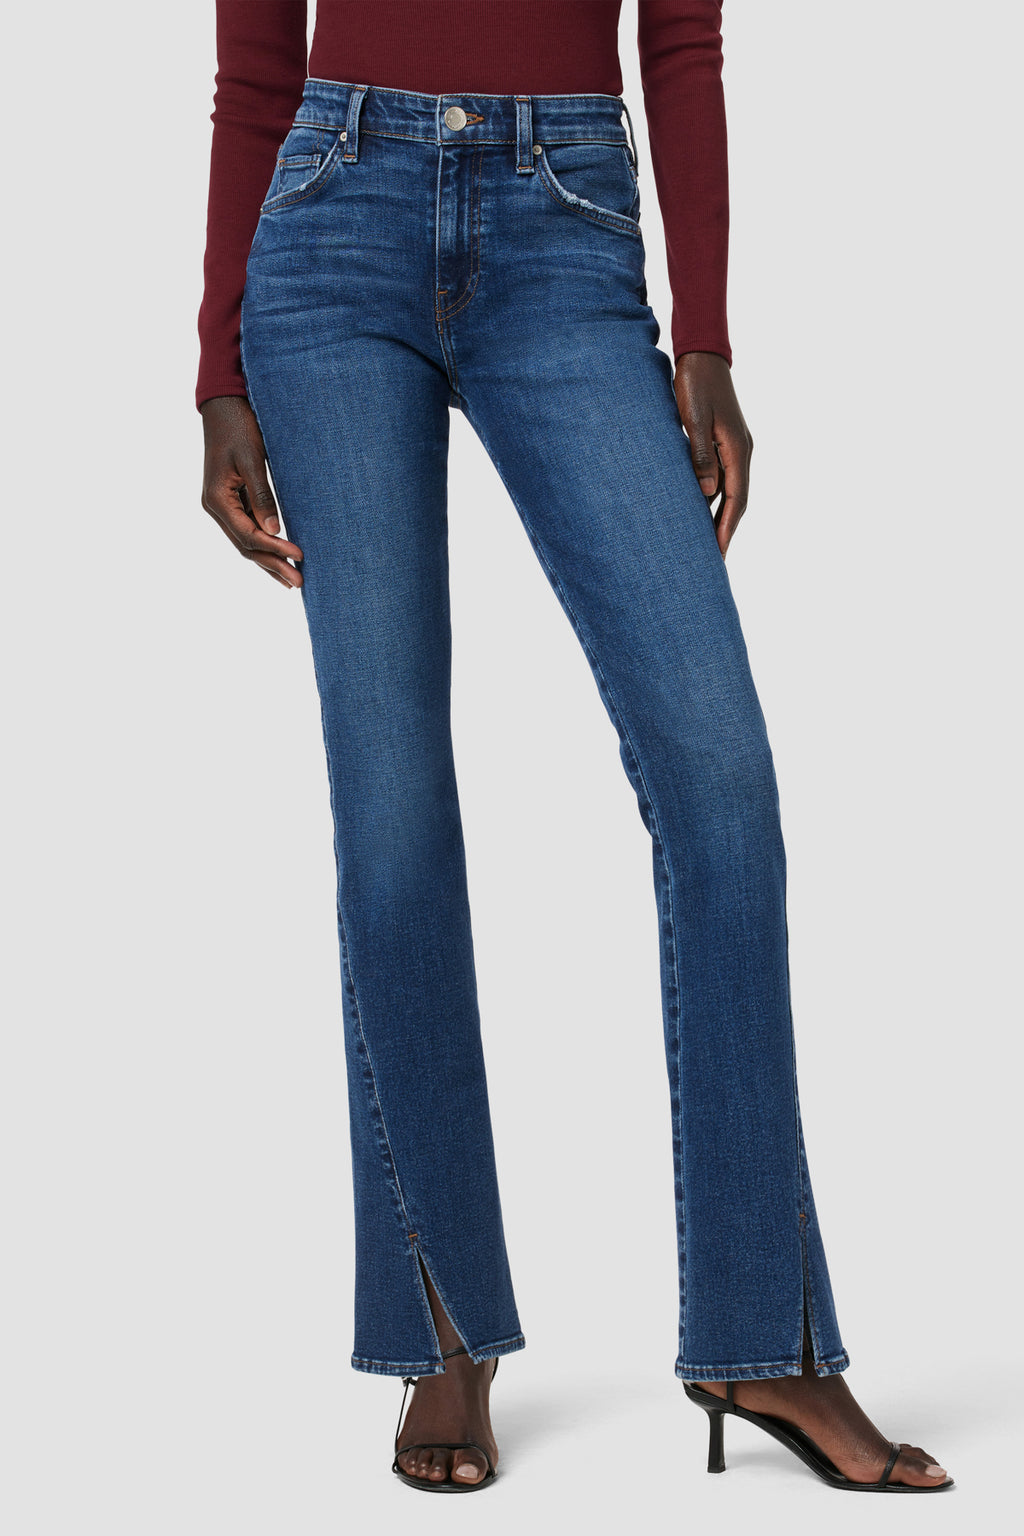 HUDSON Blue Denim PATCH Women's Jeans Women Size 26 Jeans - Simply Posh  Consign